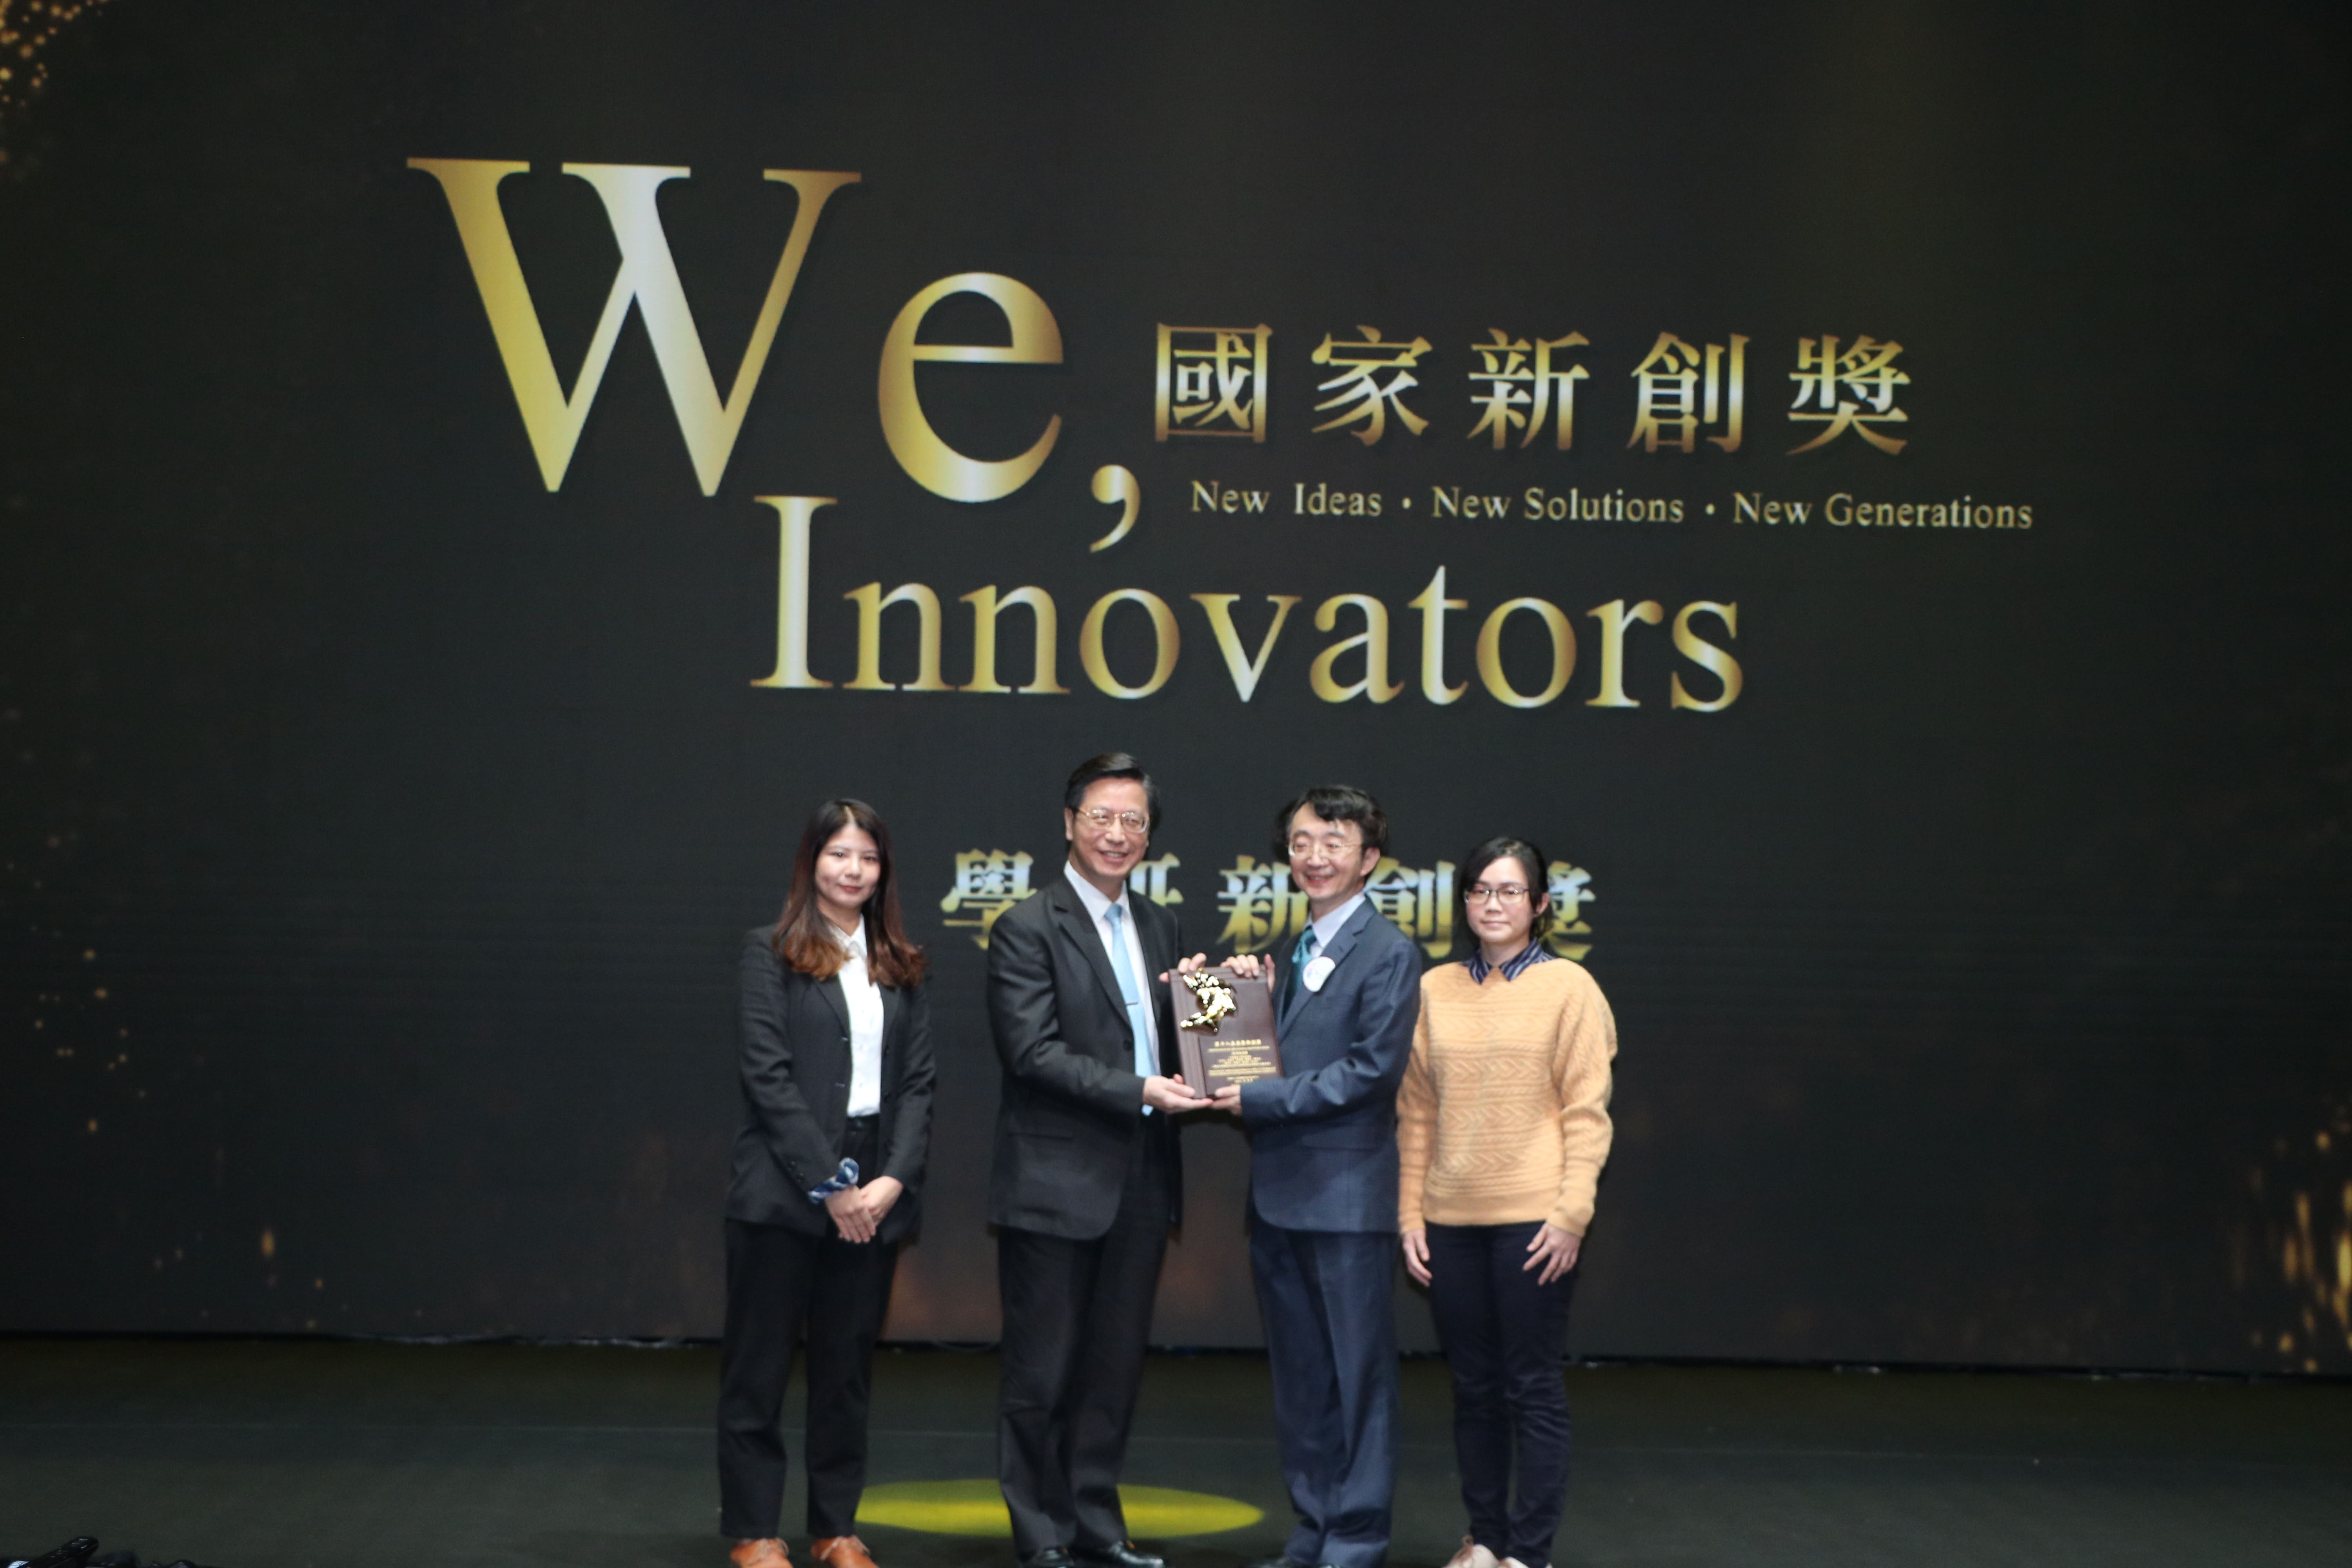 
	王志堯醫師帶領的跨校院科研團隊榮獲今年國家新創獎殊榮。
